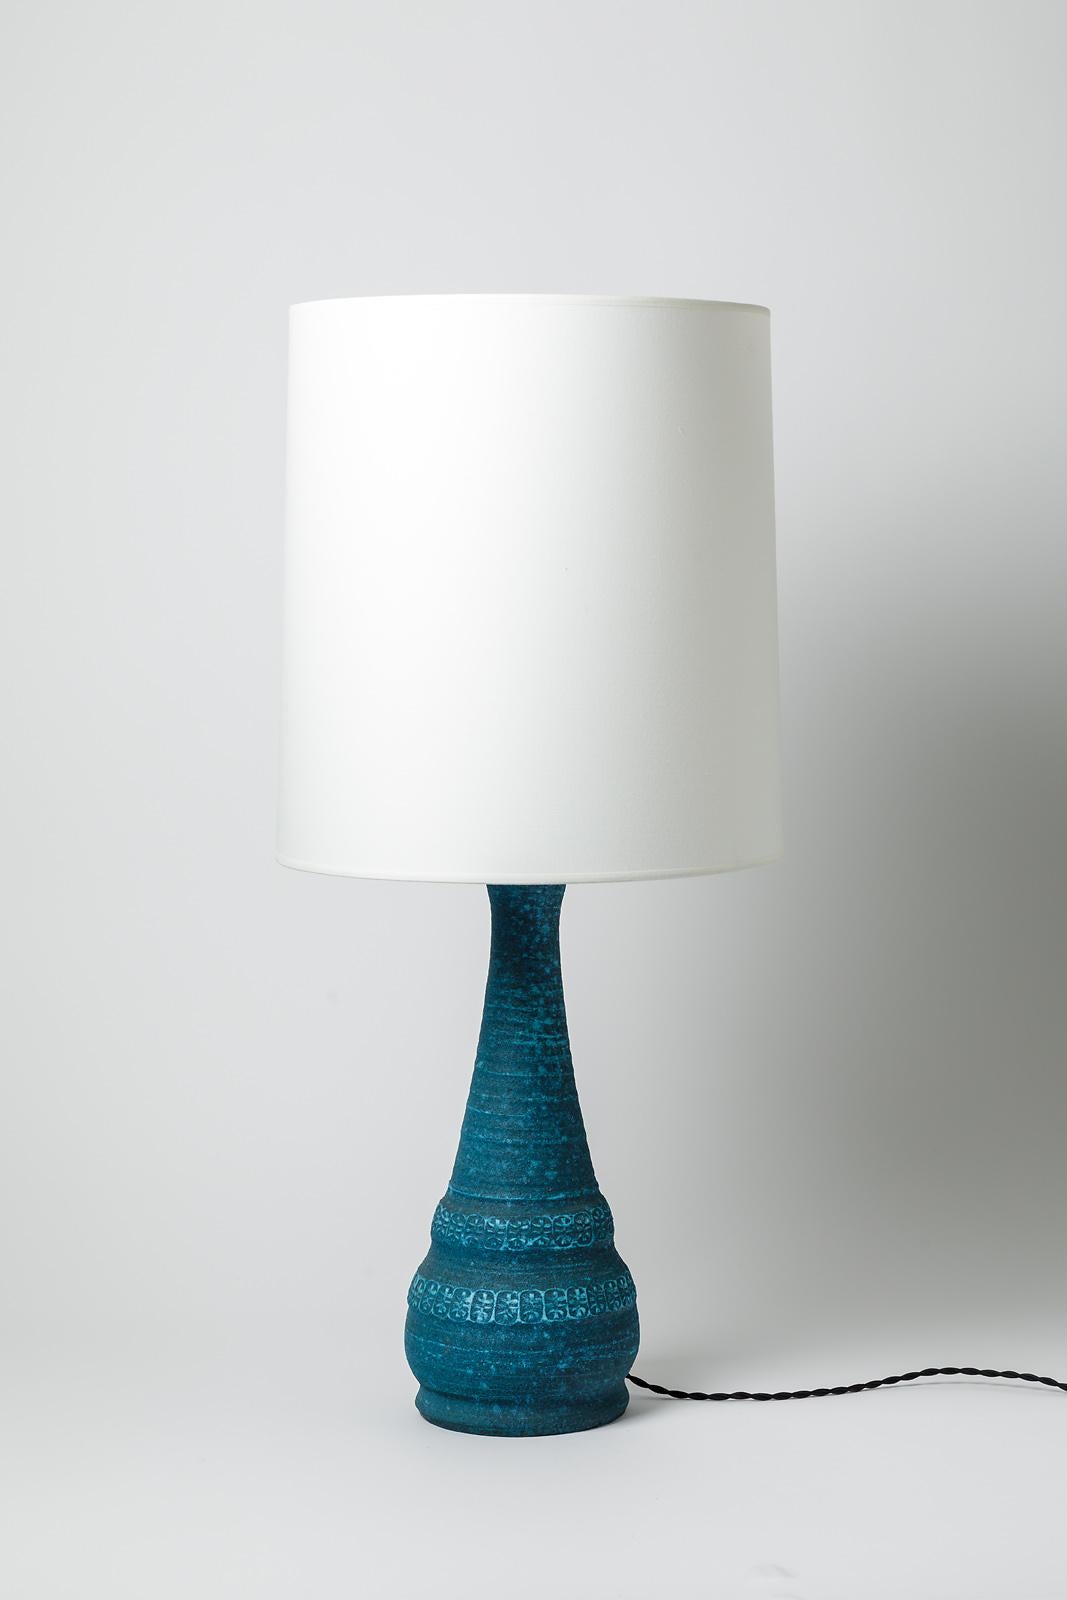 Une lampe de table en céramique à décor de glaçure bleue par les potiers d'Accolay.
Vendu avec une nouvelle lampe à abat-jour nouveau système électrique européen
Conditions d'origine parfaites.
Non signé.
Circa 1960- 1970.
Dimensions :
-